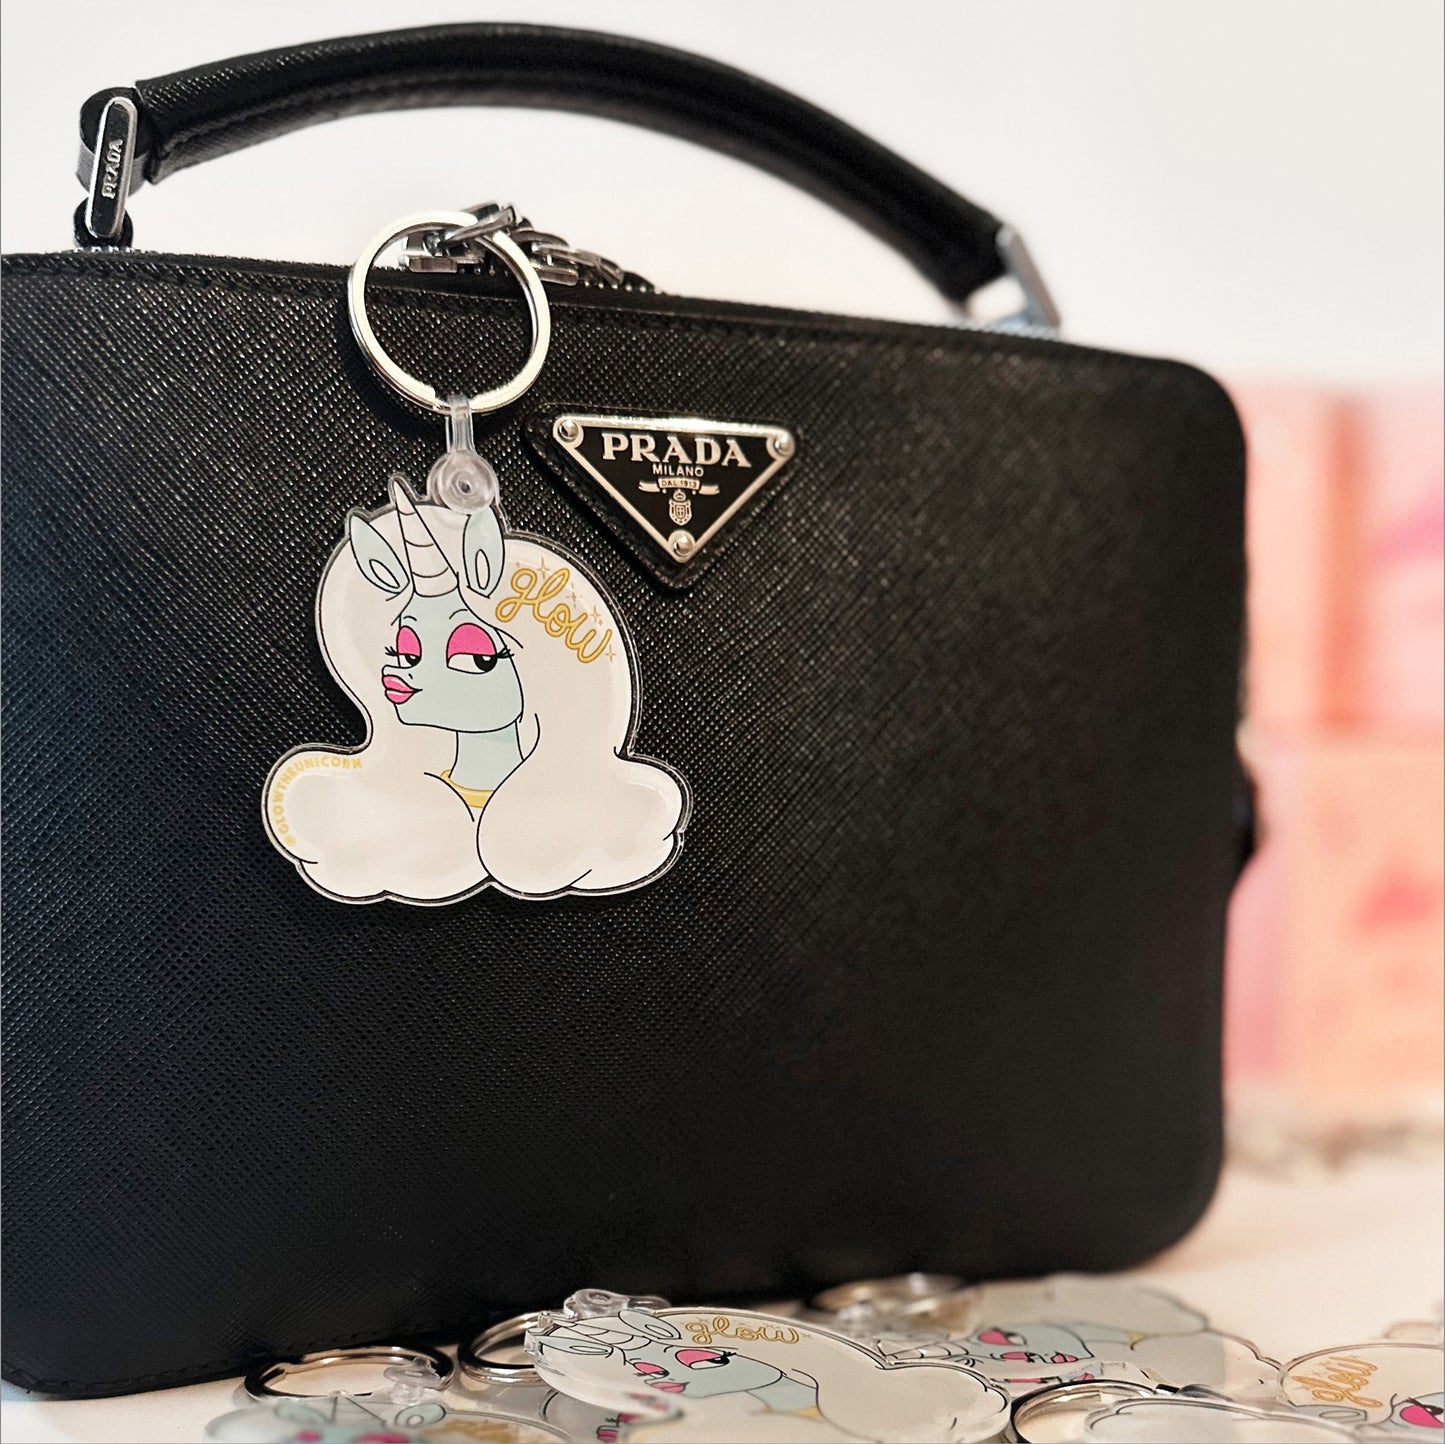 unicorn charm in prada bag